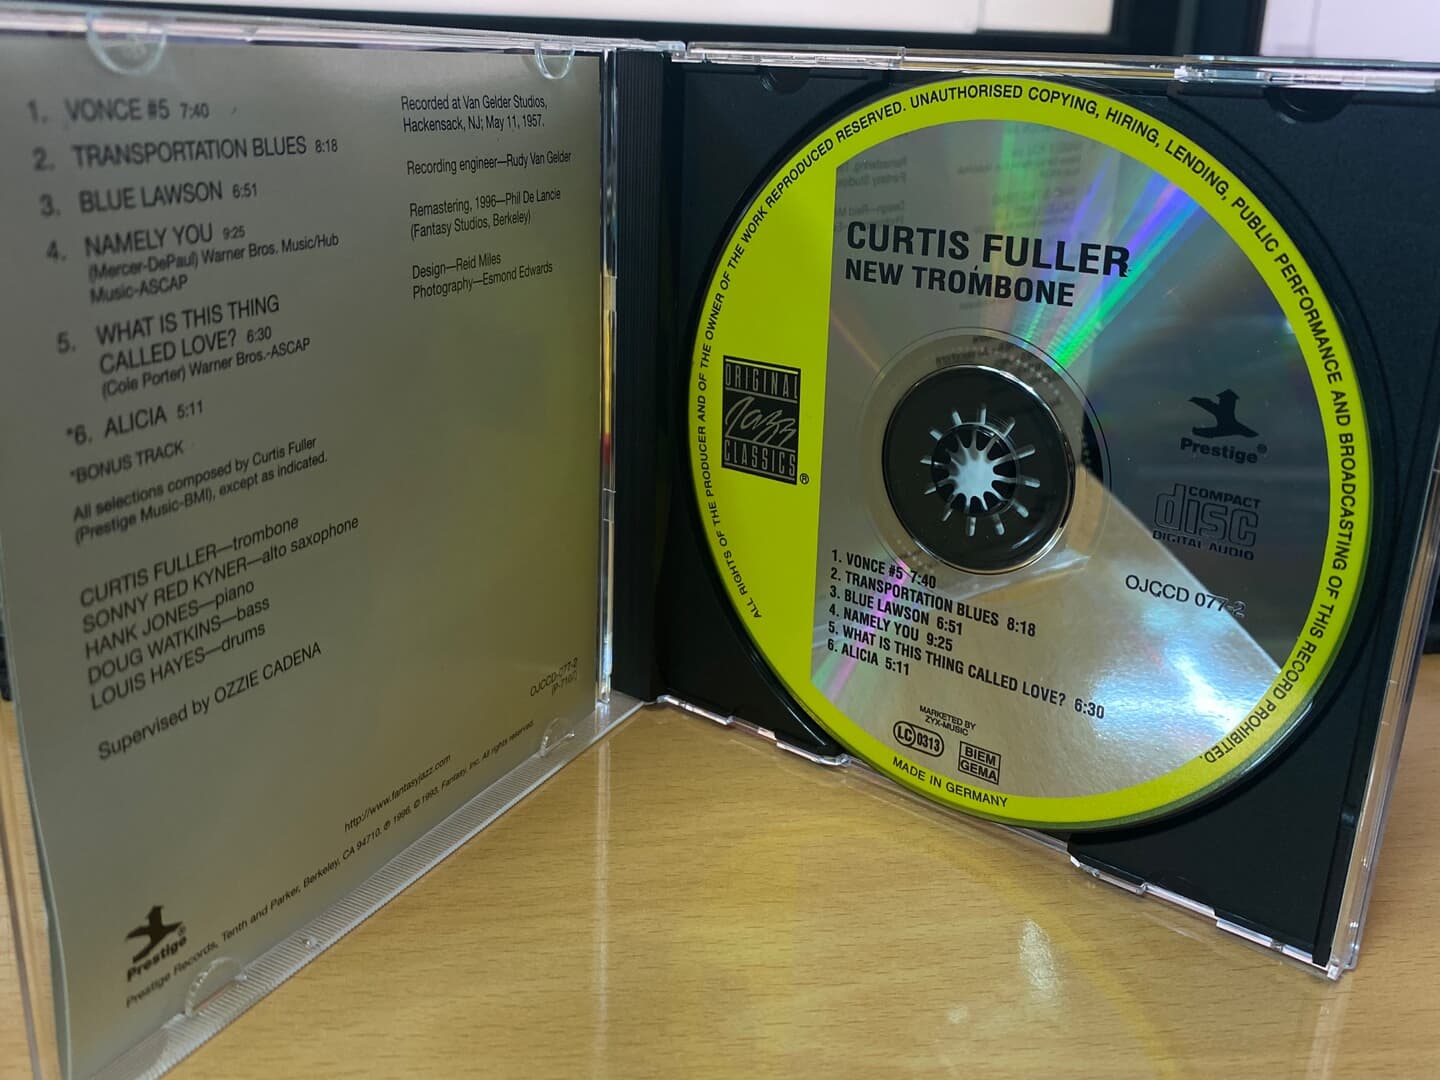 커티스 풀러 - Curtis Fuller - New Trombone [독일발매]